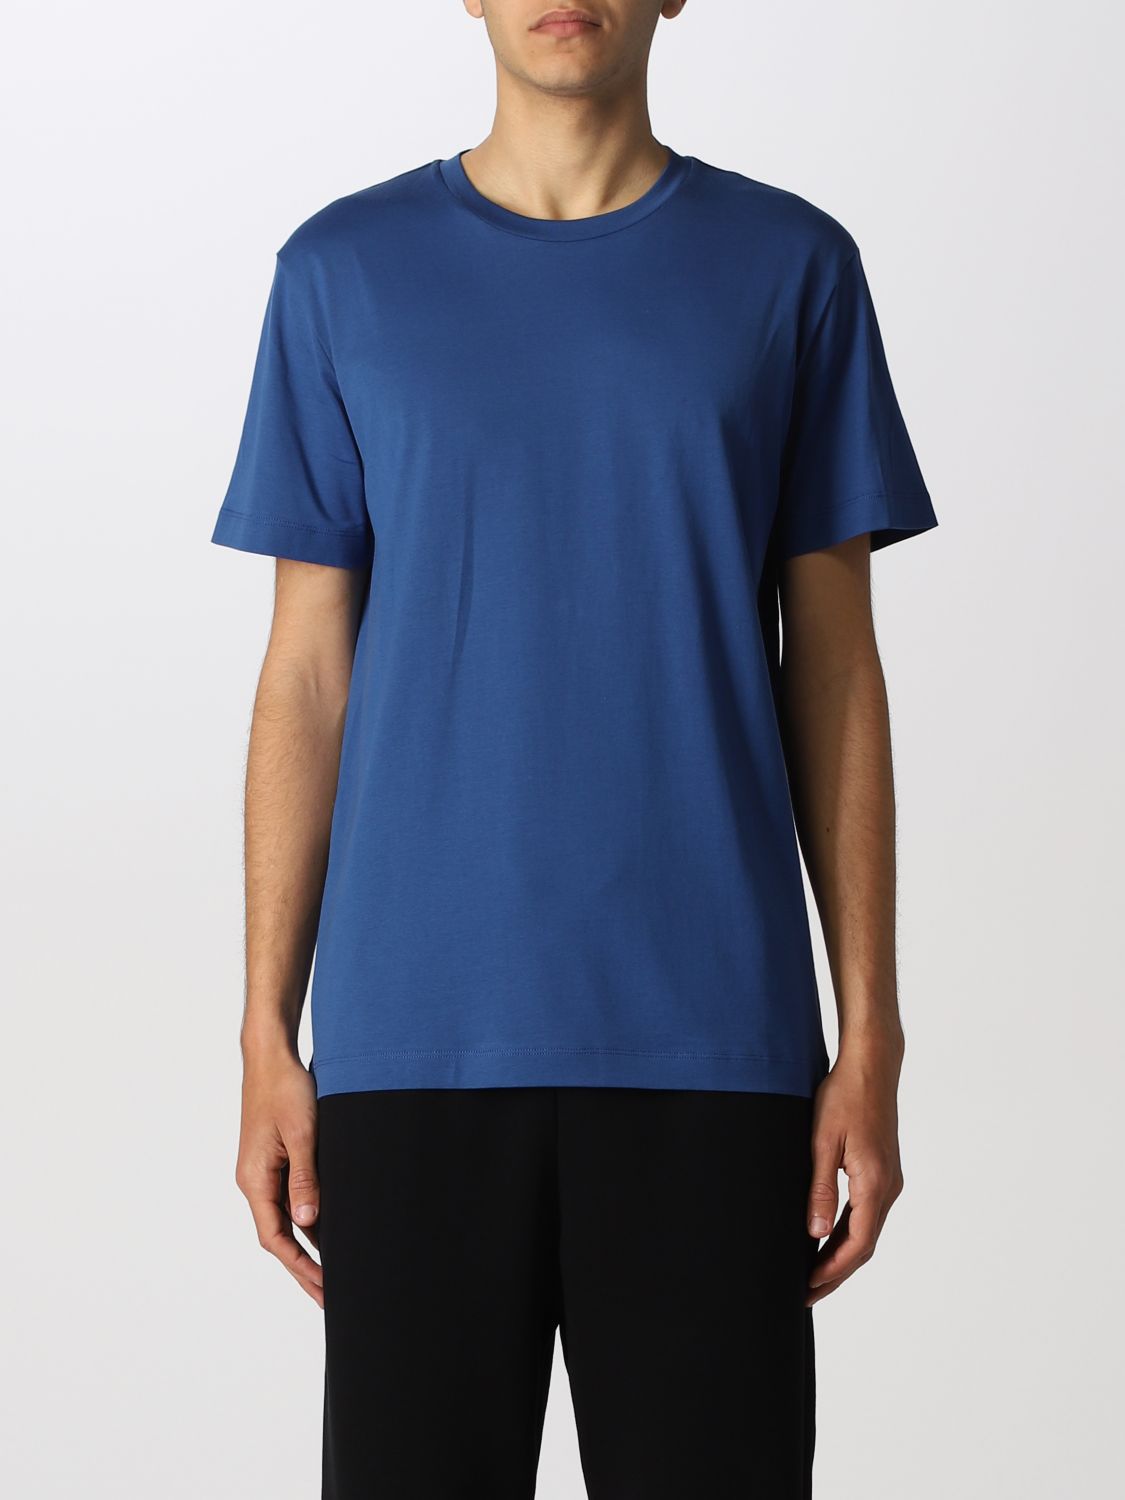 Camiseta Roberto Collina: Camiseta hombre Roberto Collina azul oscuro 1